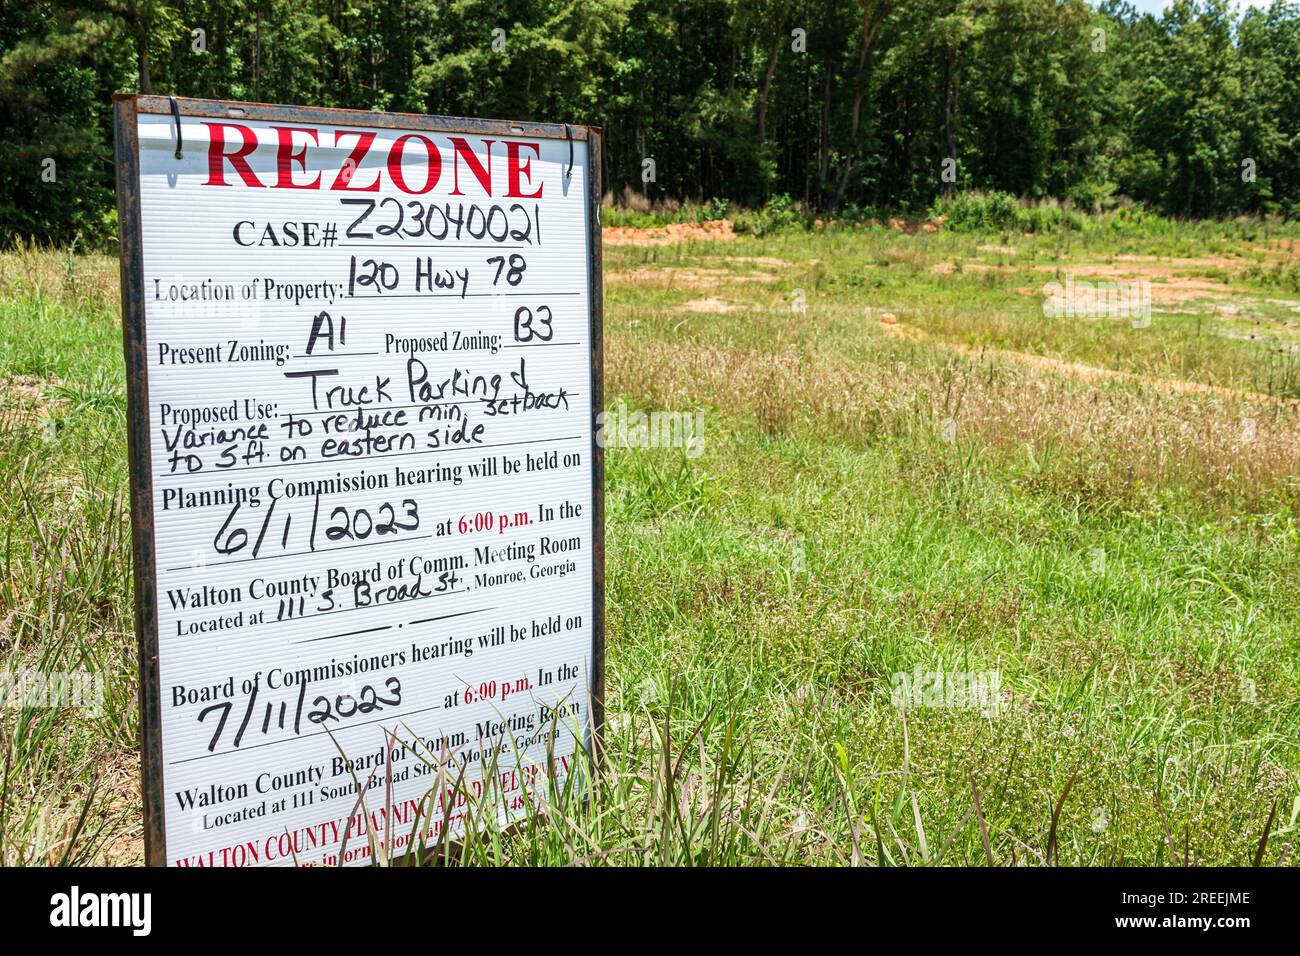 Monroe Georgia,rural rezone rezoning sign zoning notice Stock Photo